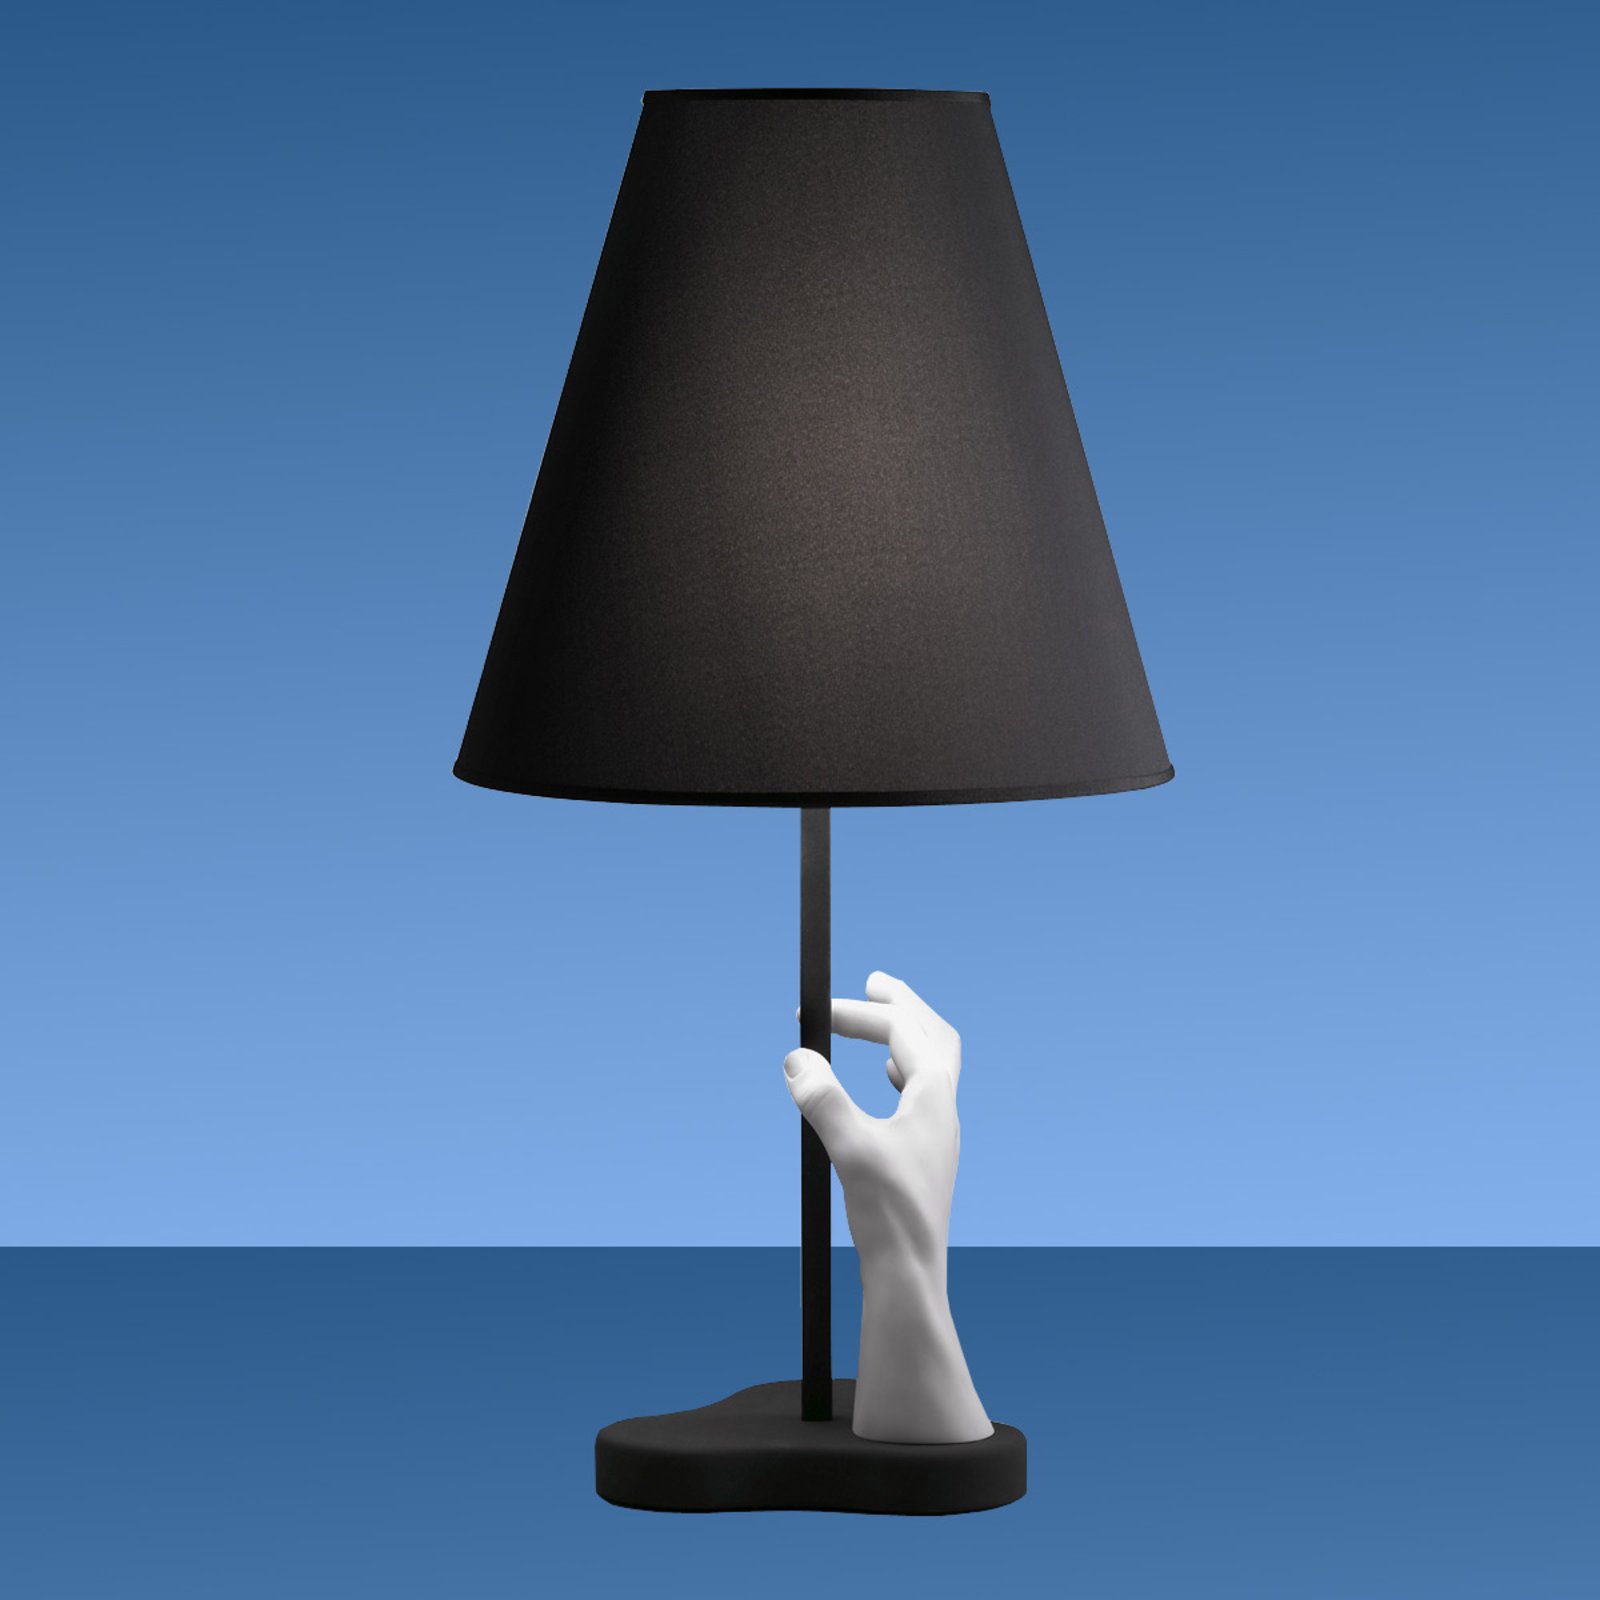 Atractiva lámpara de mesa Mano de diseño